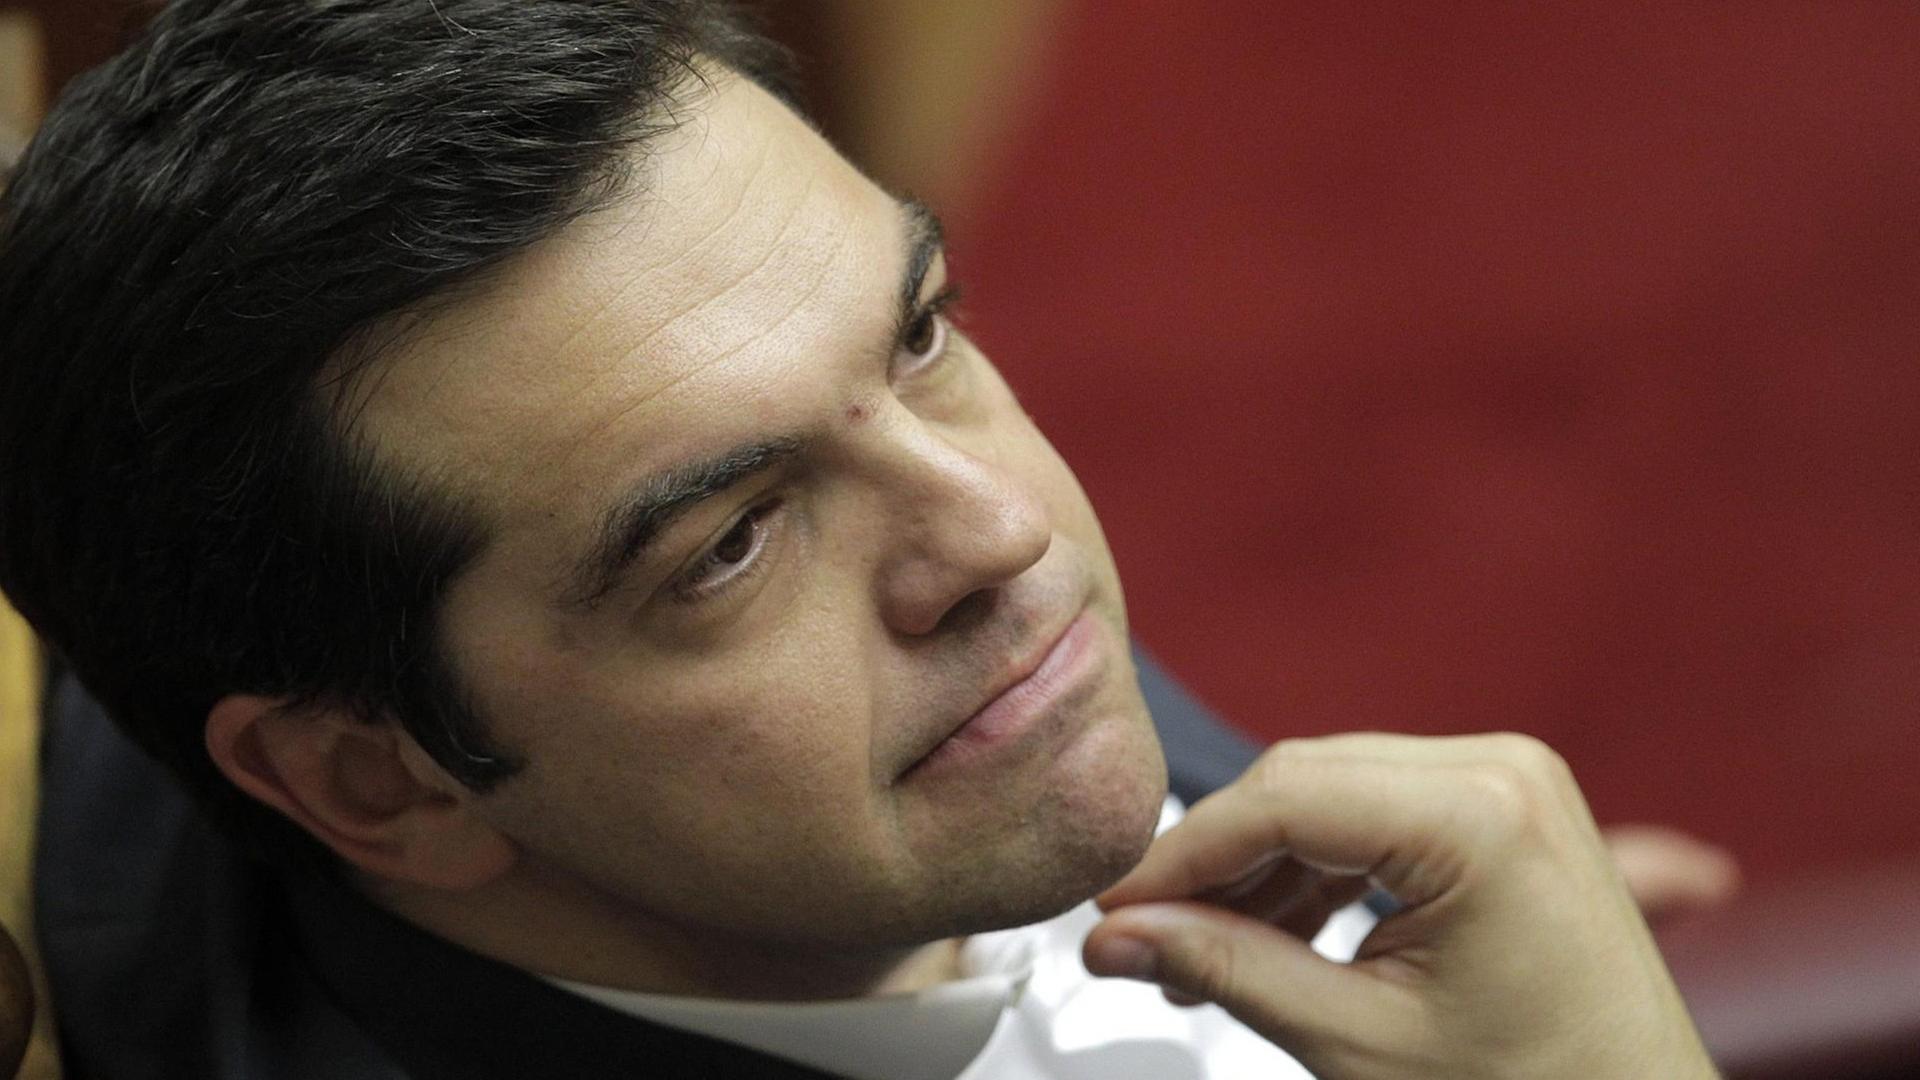 Alexis Tsipras während der Abstimmung im griechischen Parlament.